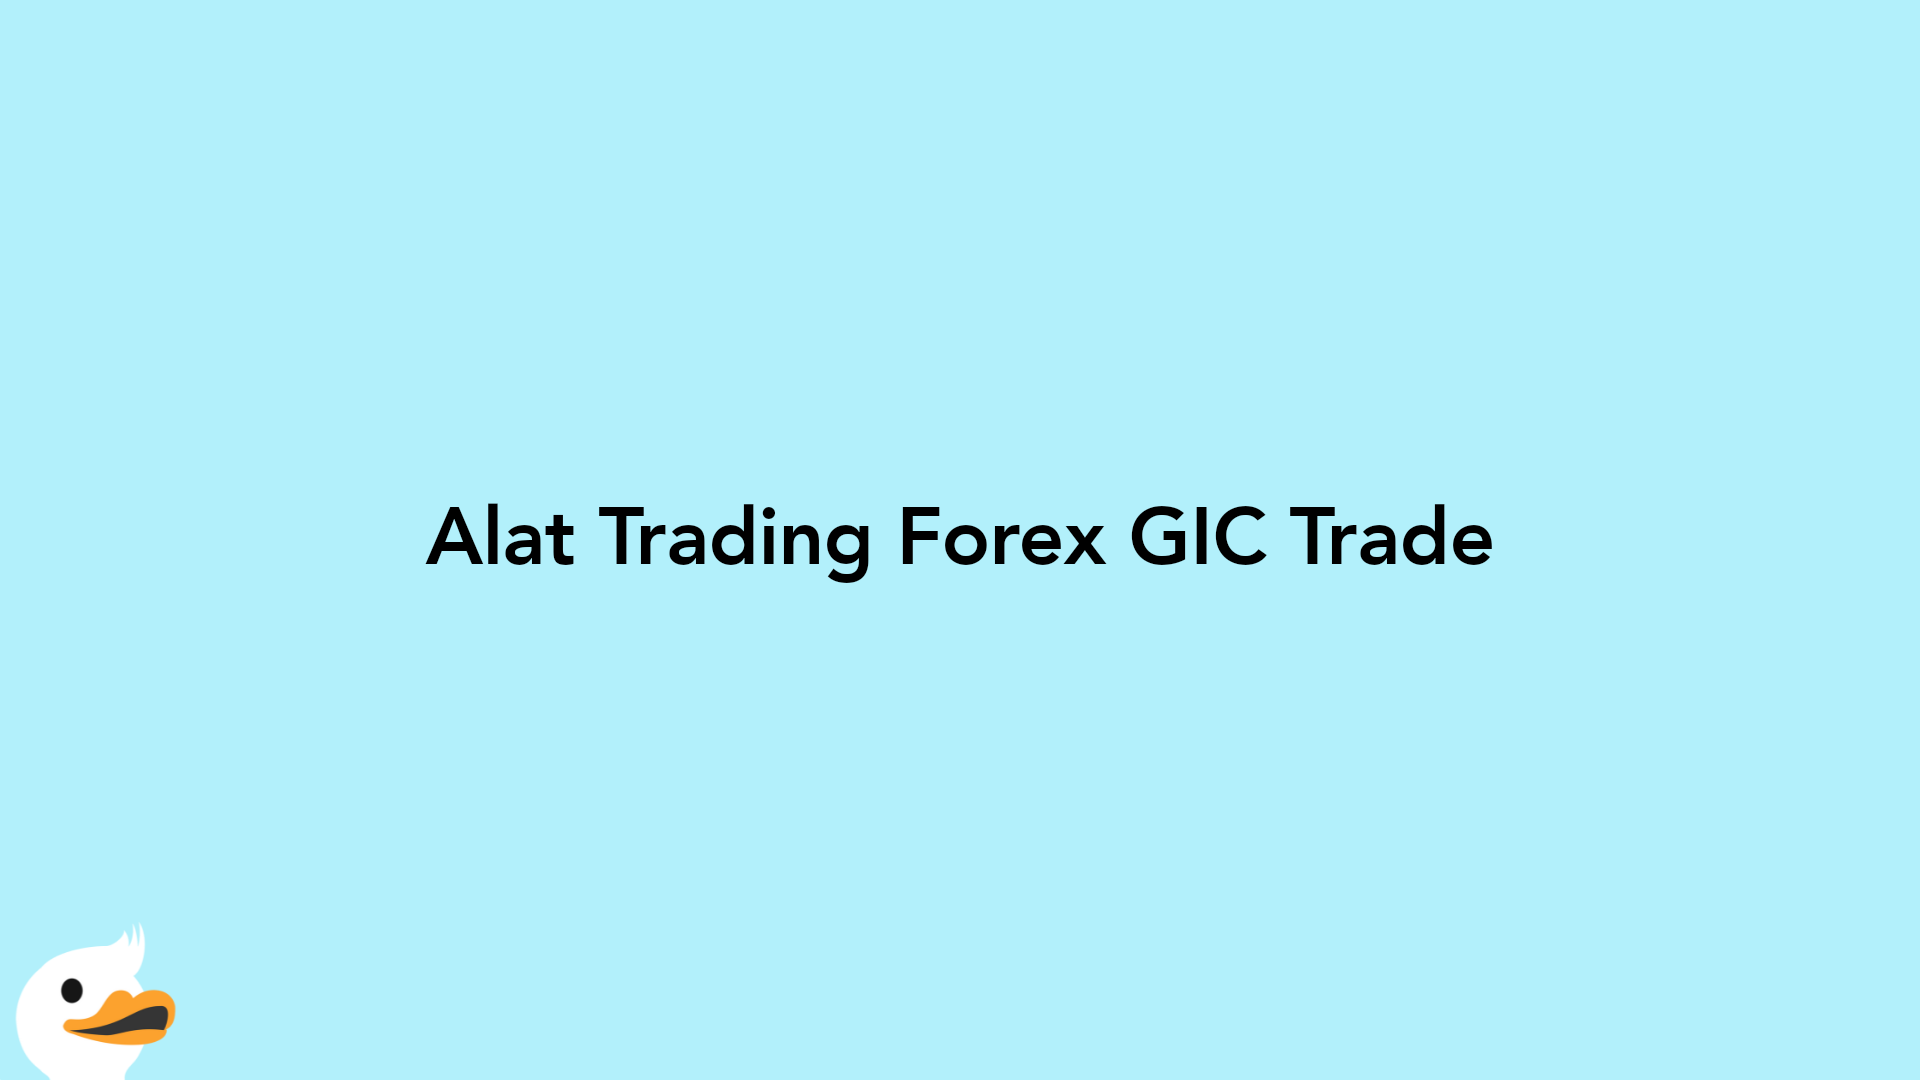 Alat Trading Forex GIC Trade